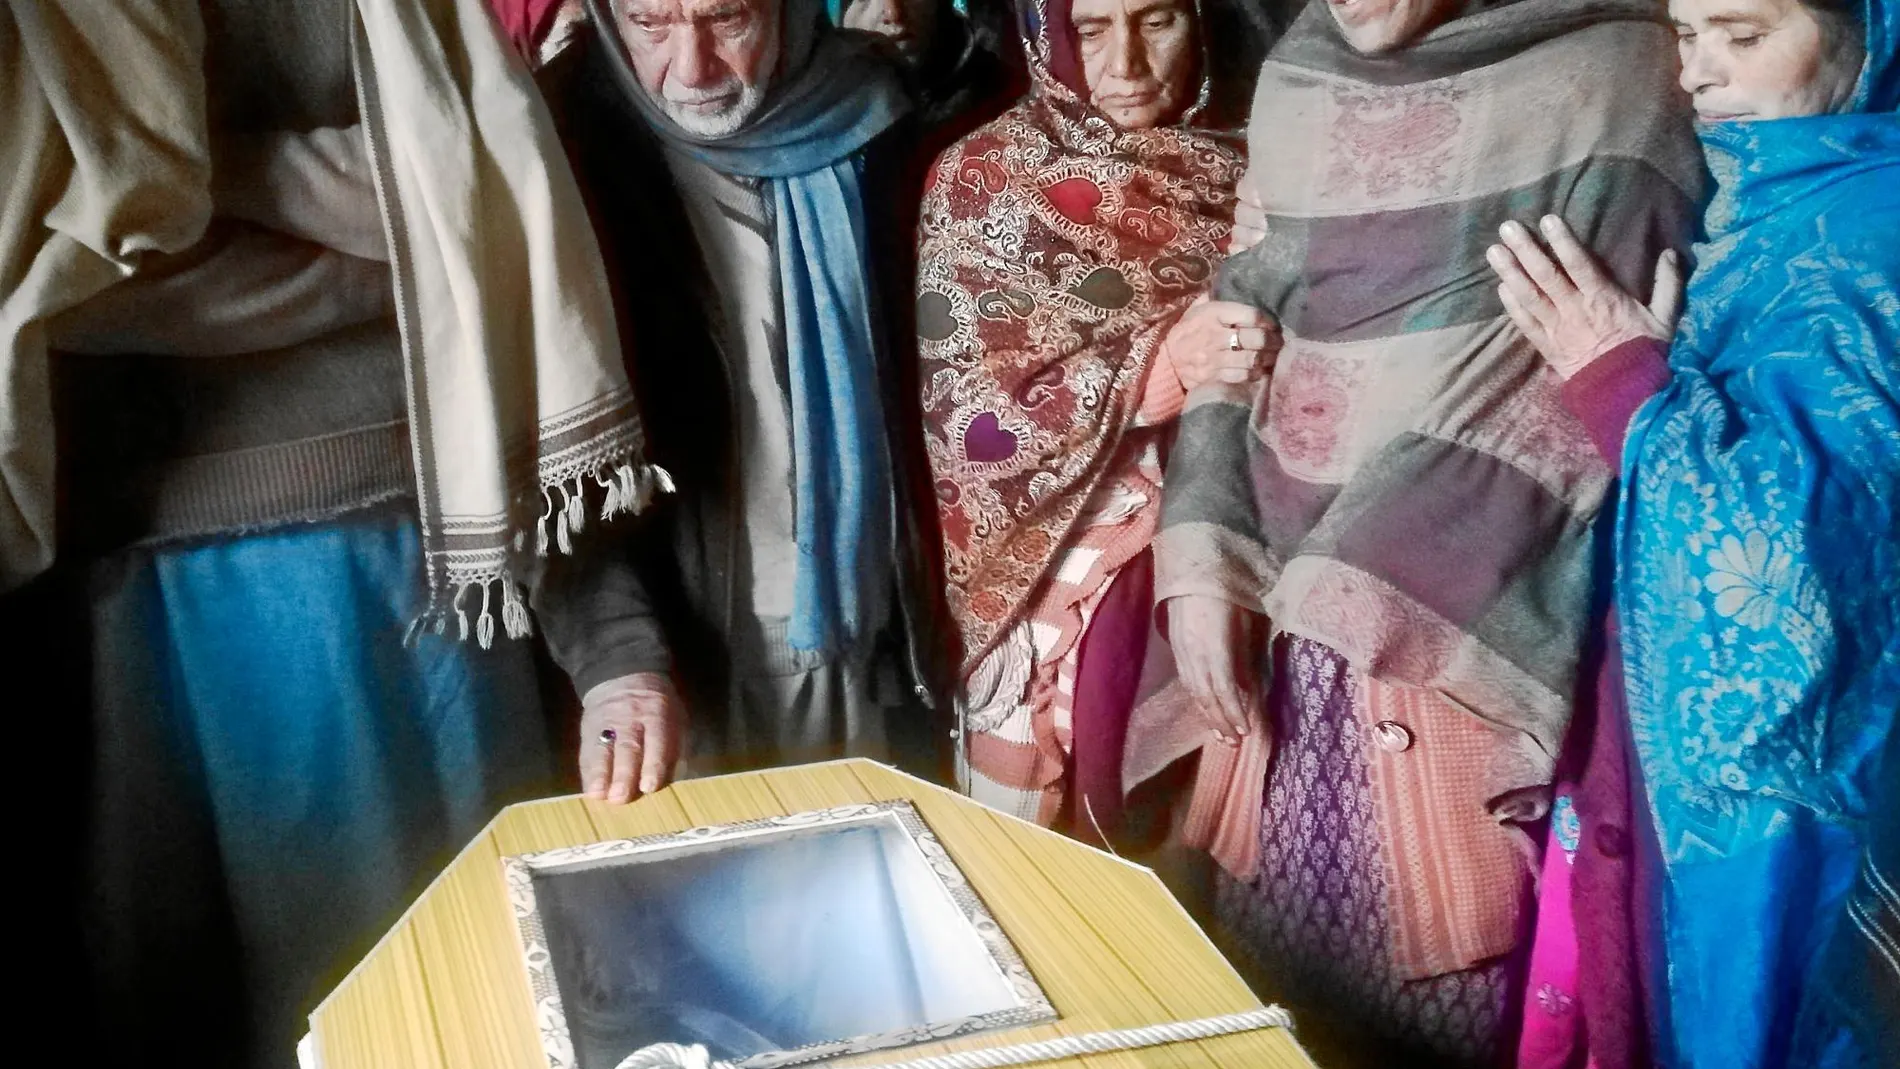 Familiares de Sudhai Quresi, fallecido en el intercambio de disparos con las fuerzas indias, se despiden en el funeral celebrado en su ciudad natal, Jhehlum en Pakistán